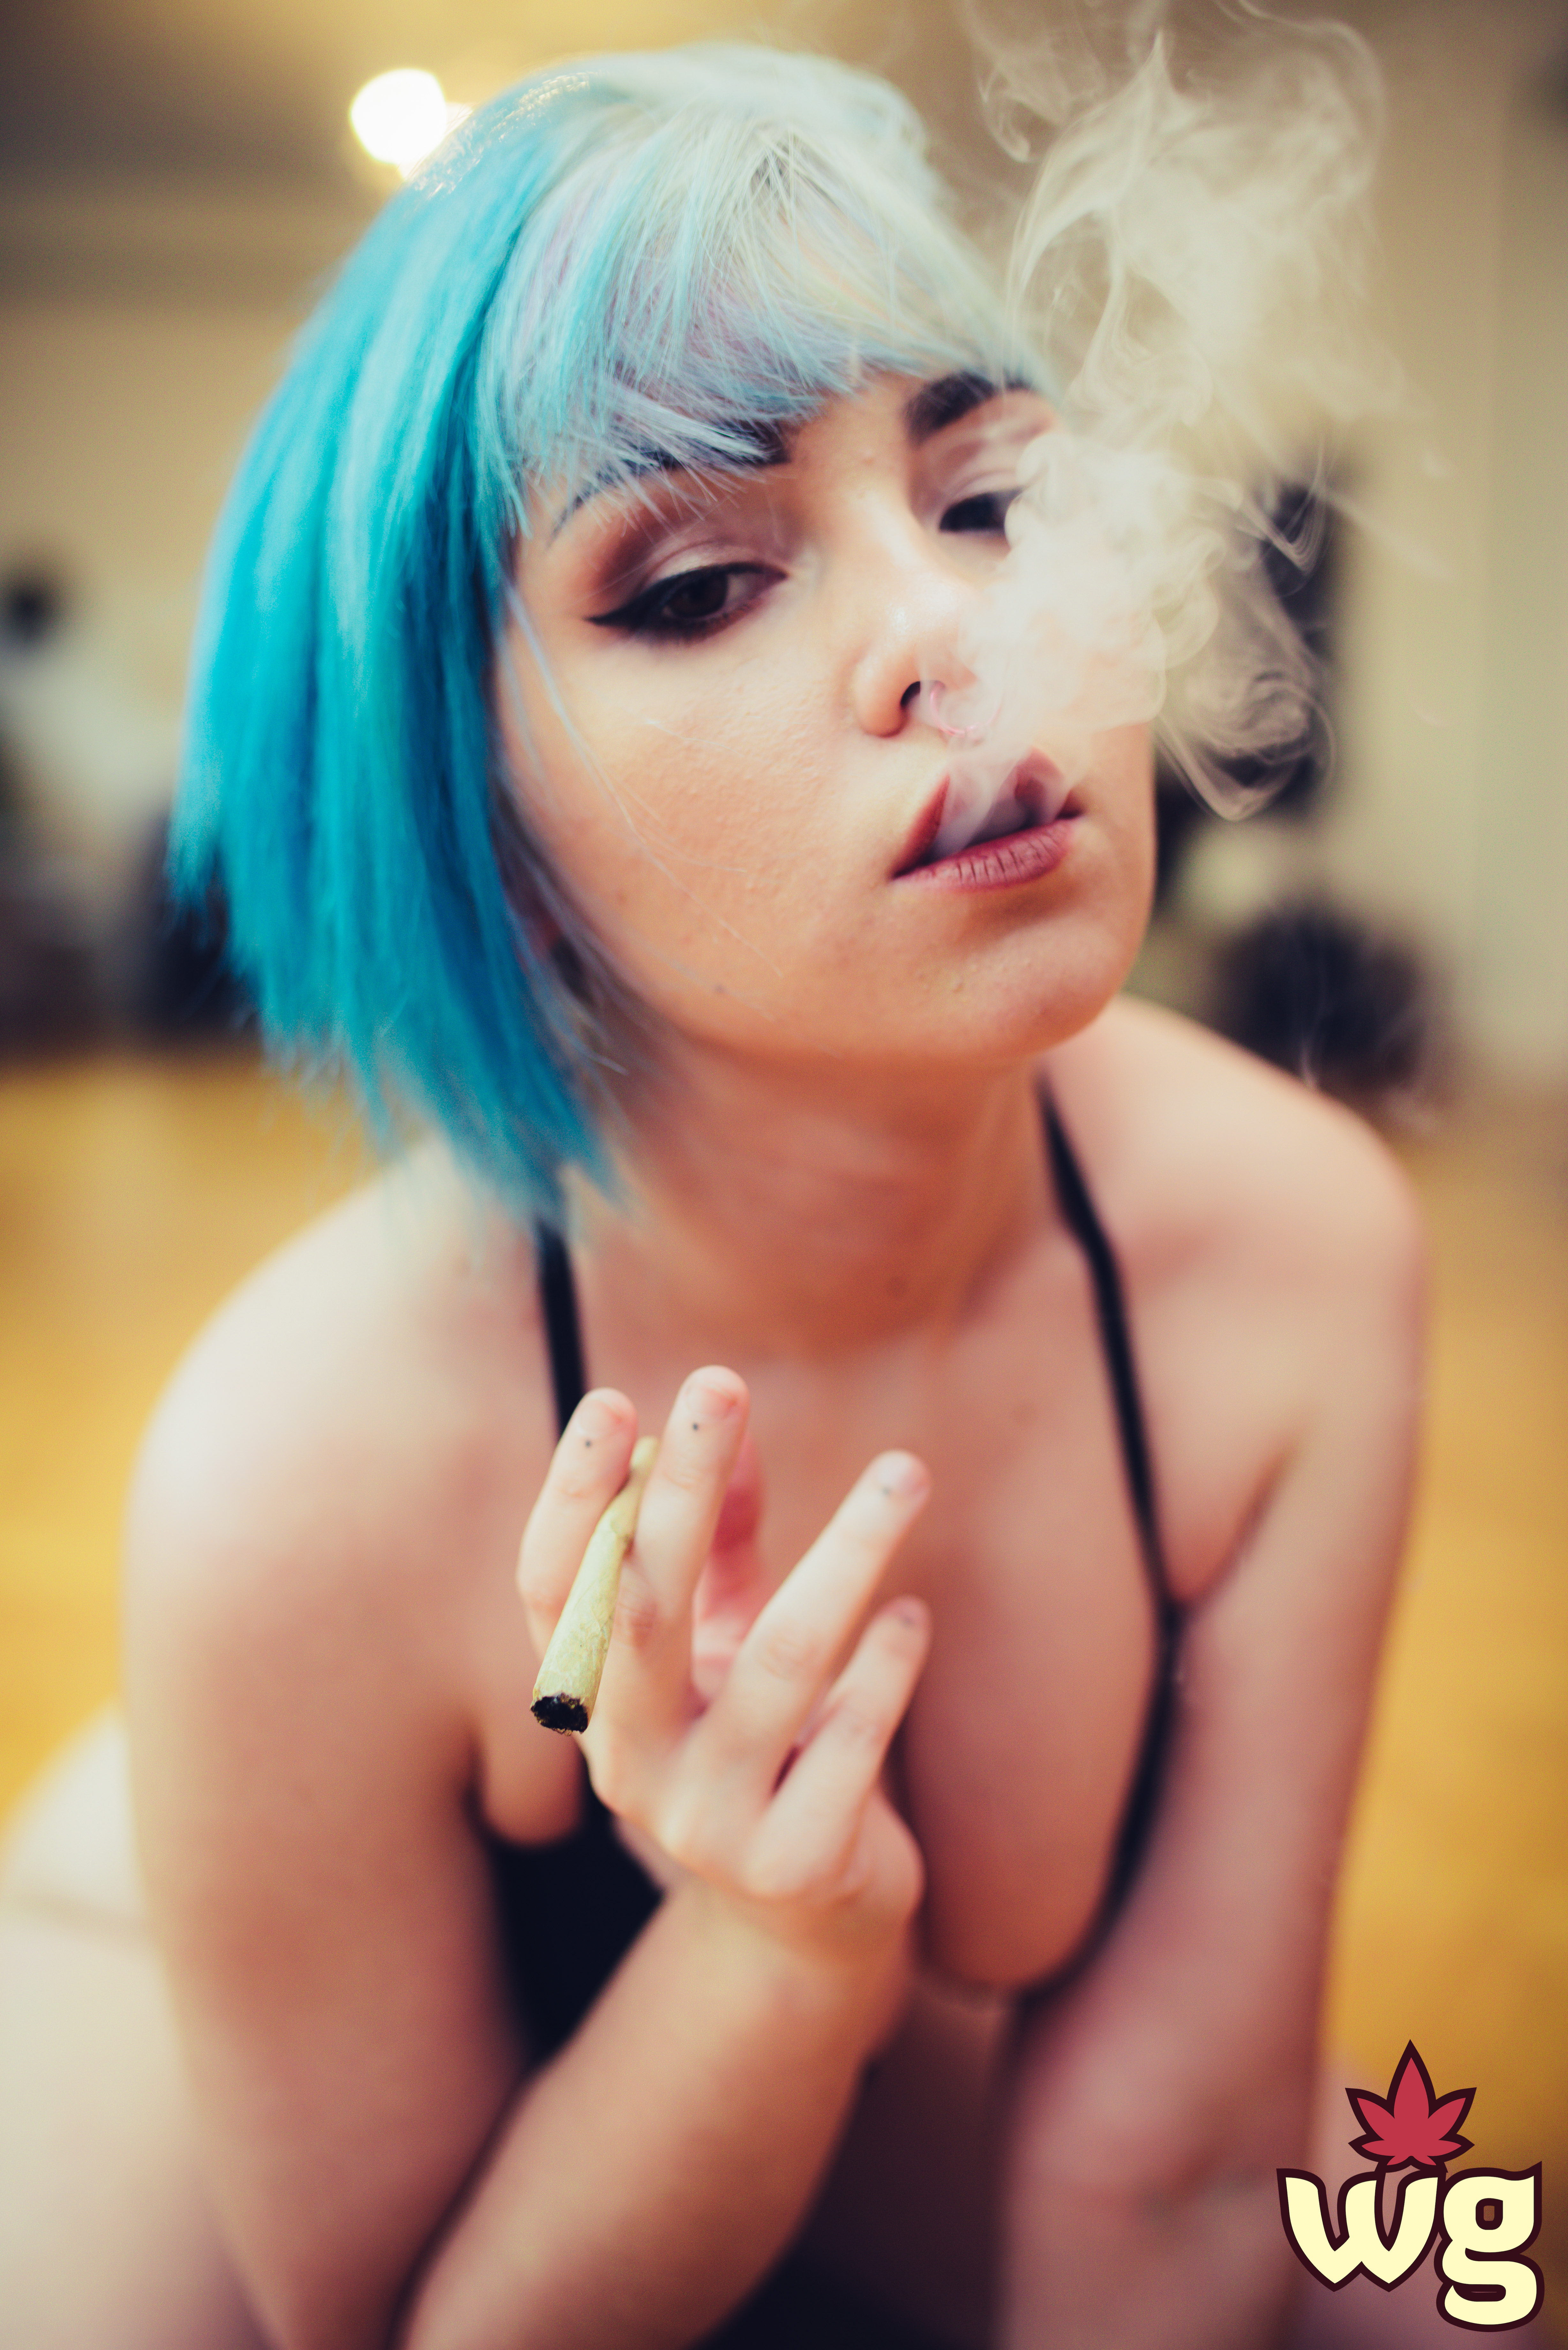 hot girl smoking weed | Weed Girls